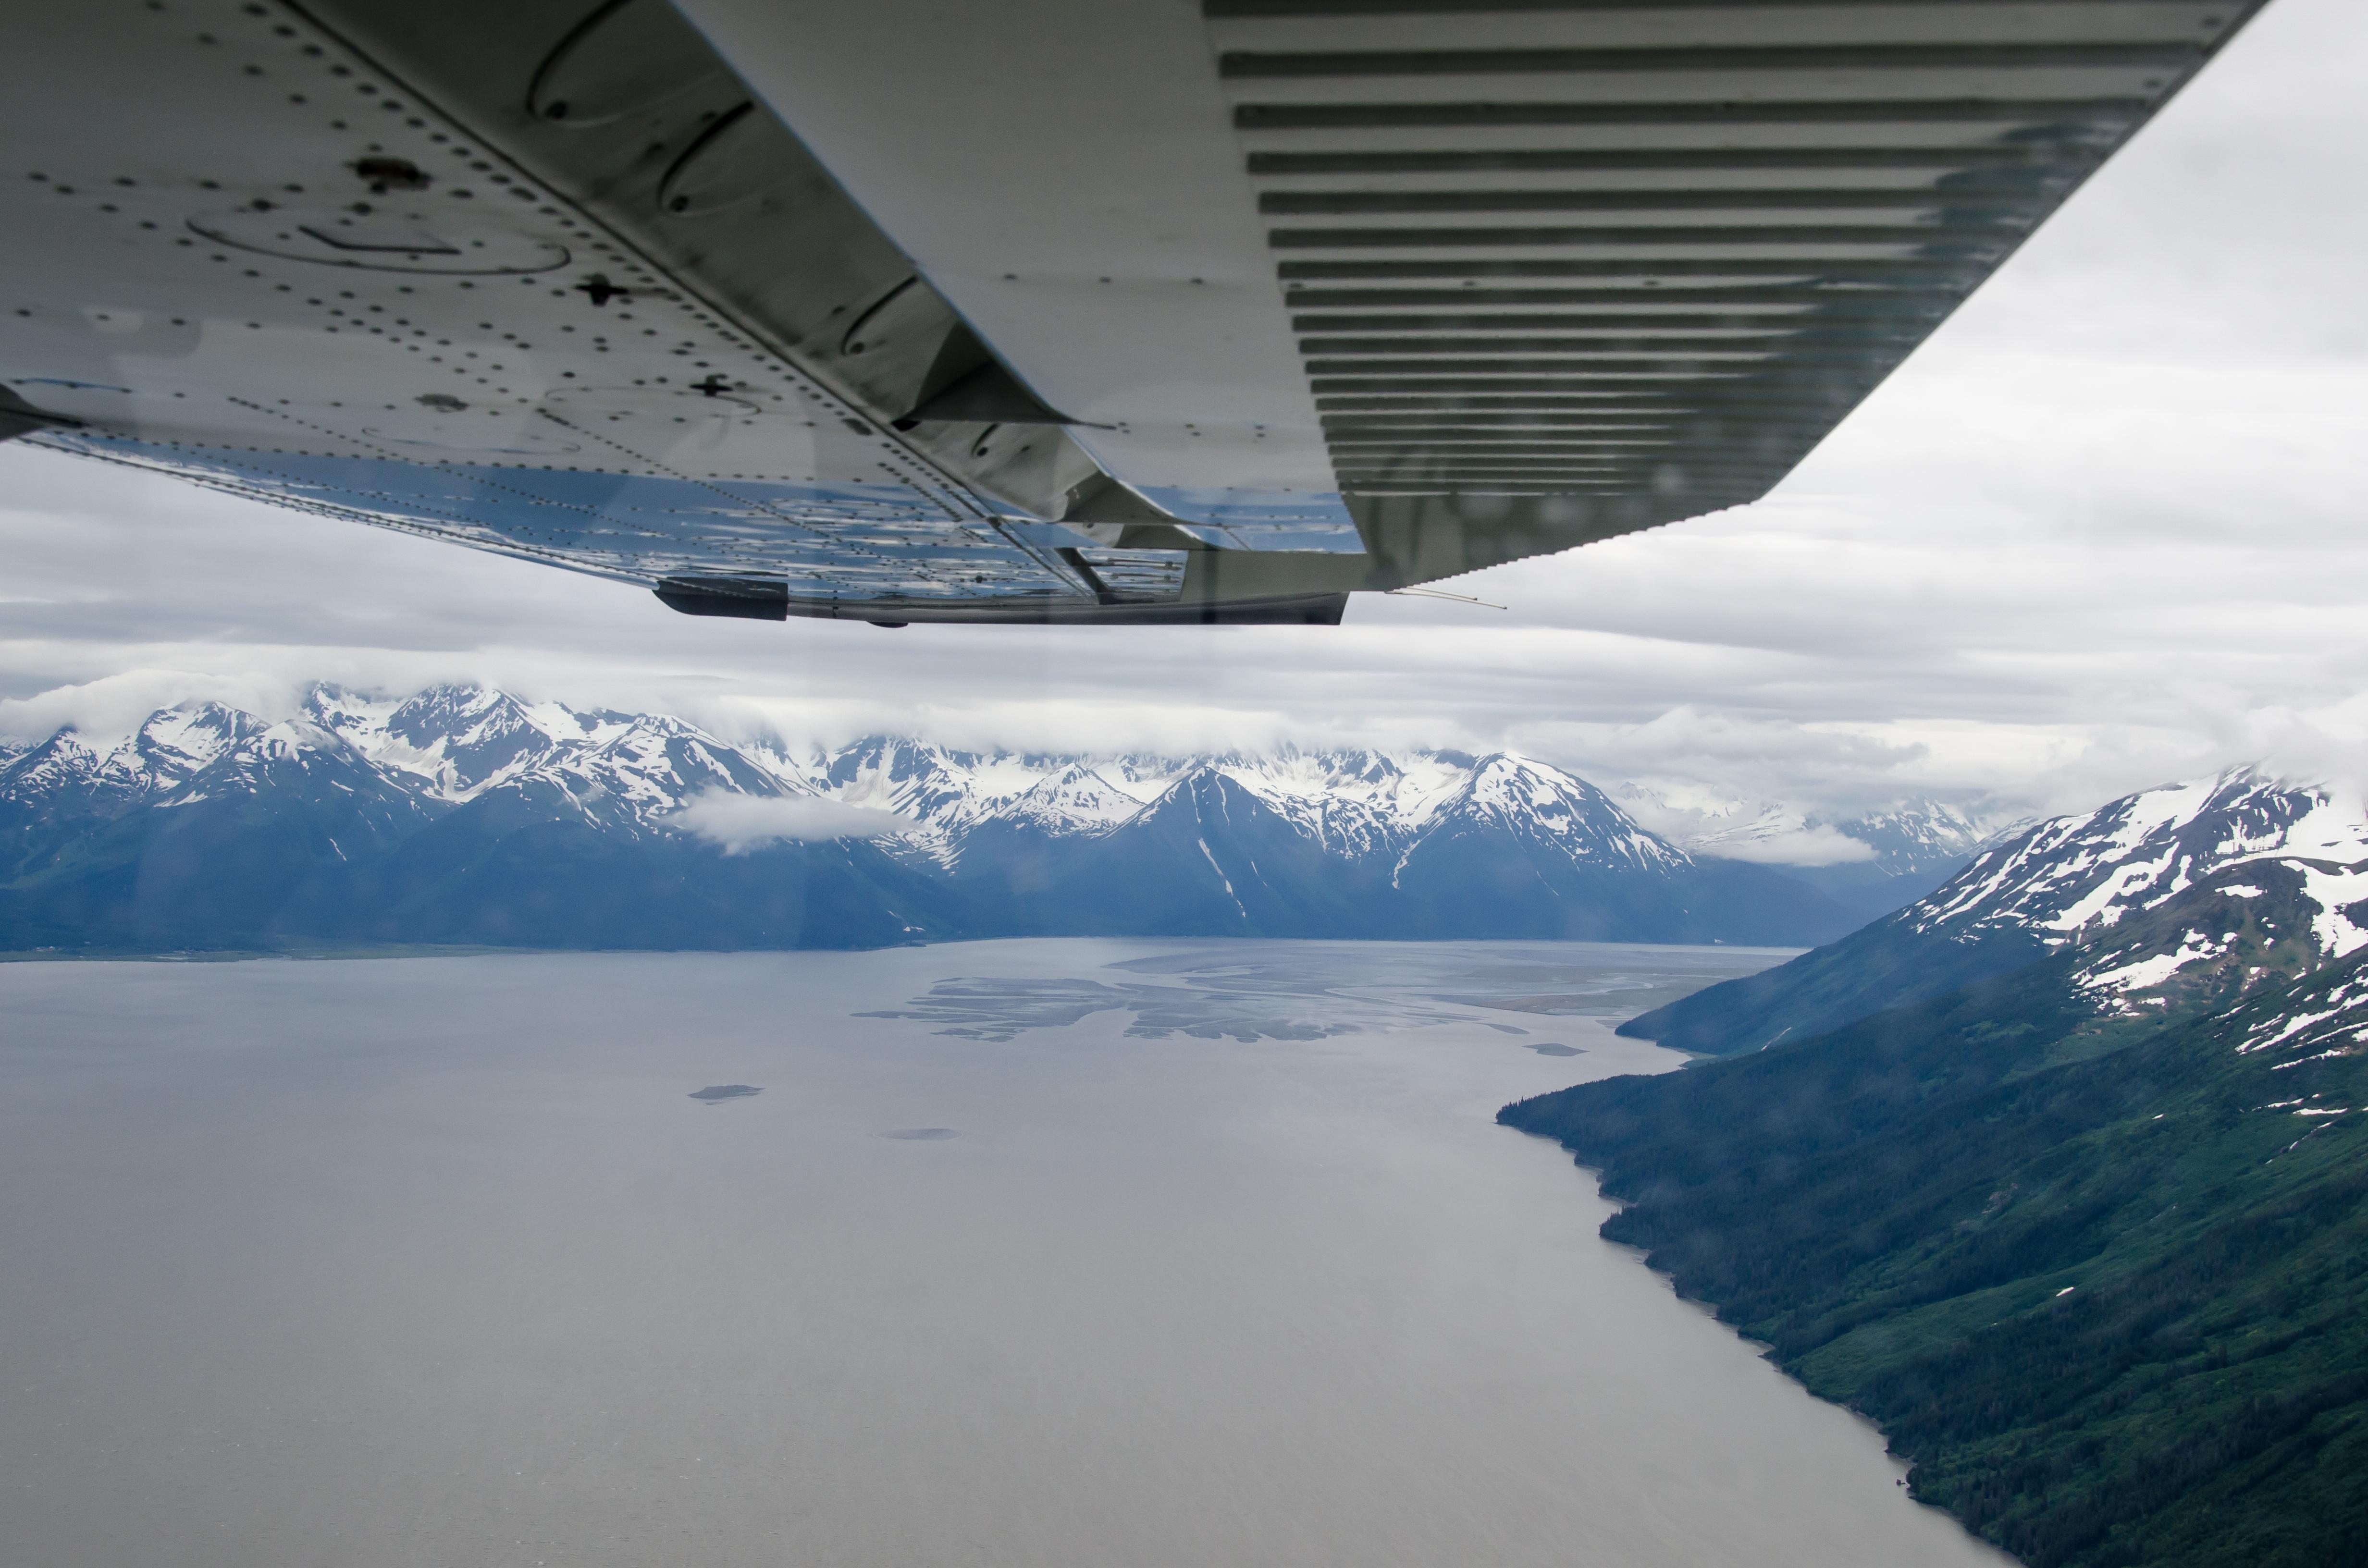 FBI Plane Flies Over Alaska in 2012